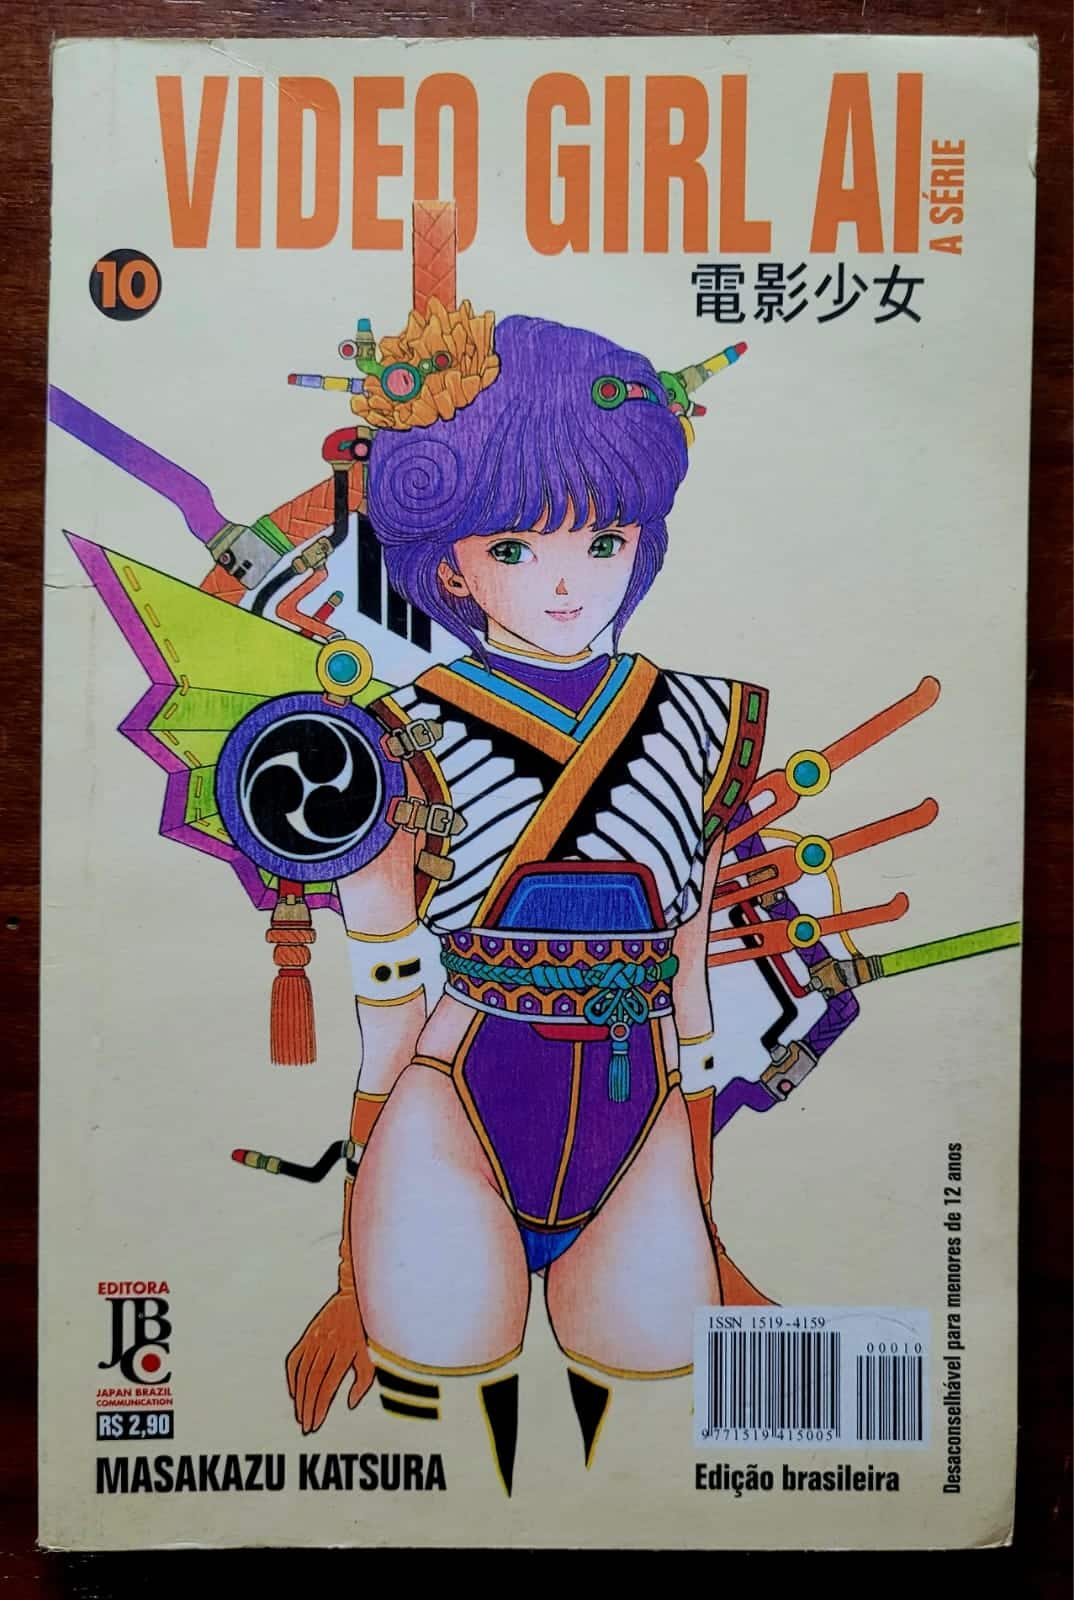 Manga Video Girl AI No 10 1 Casa do Colecionador